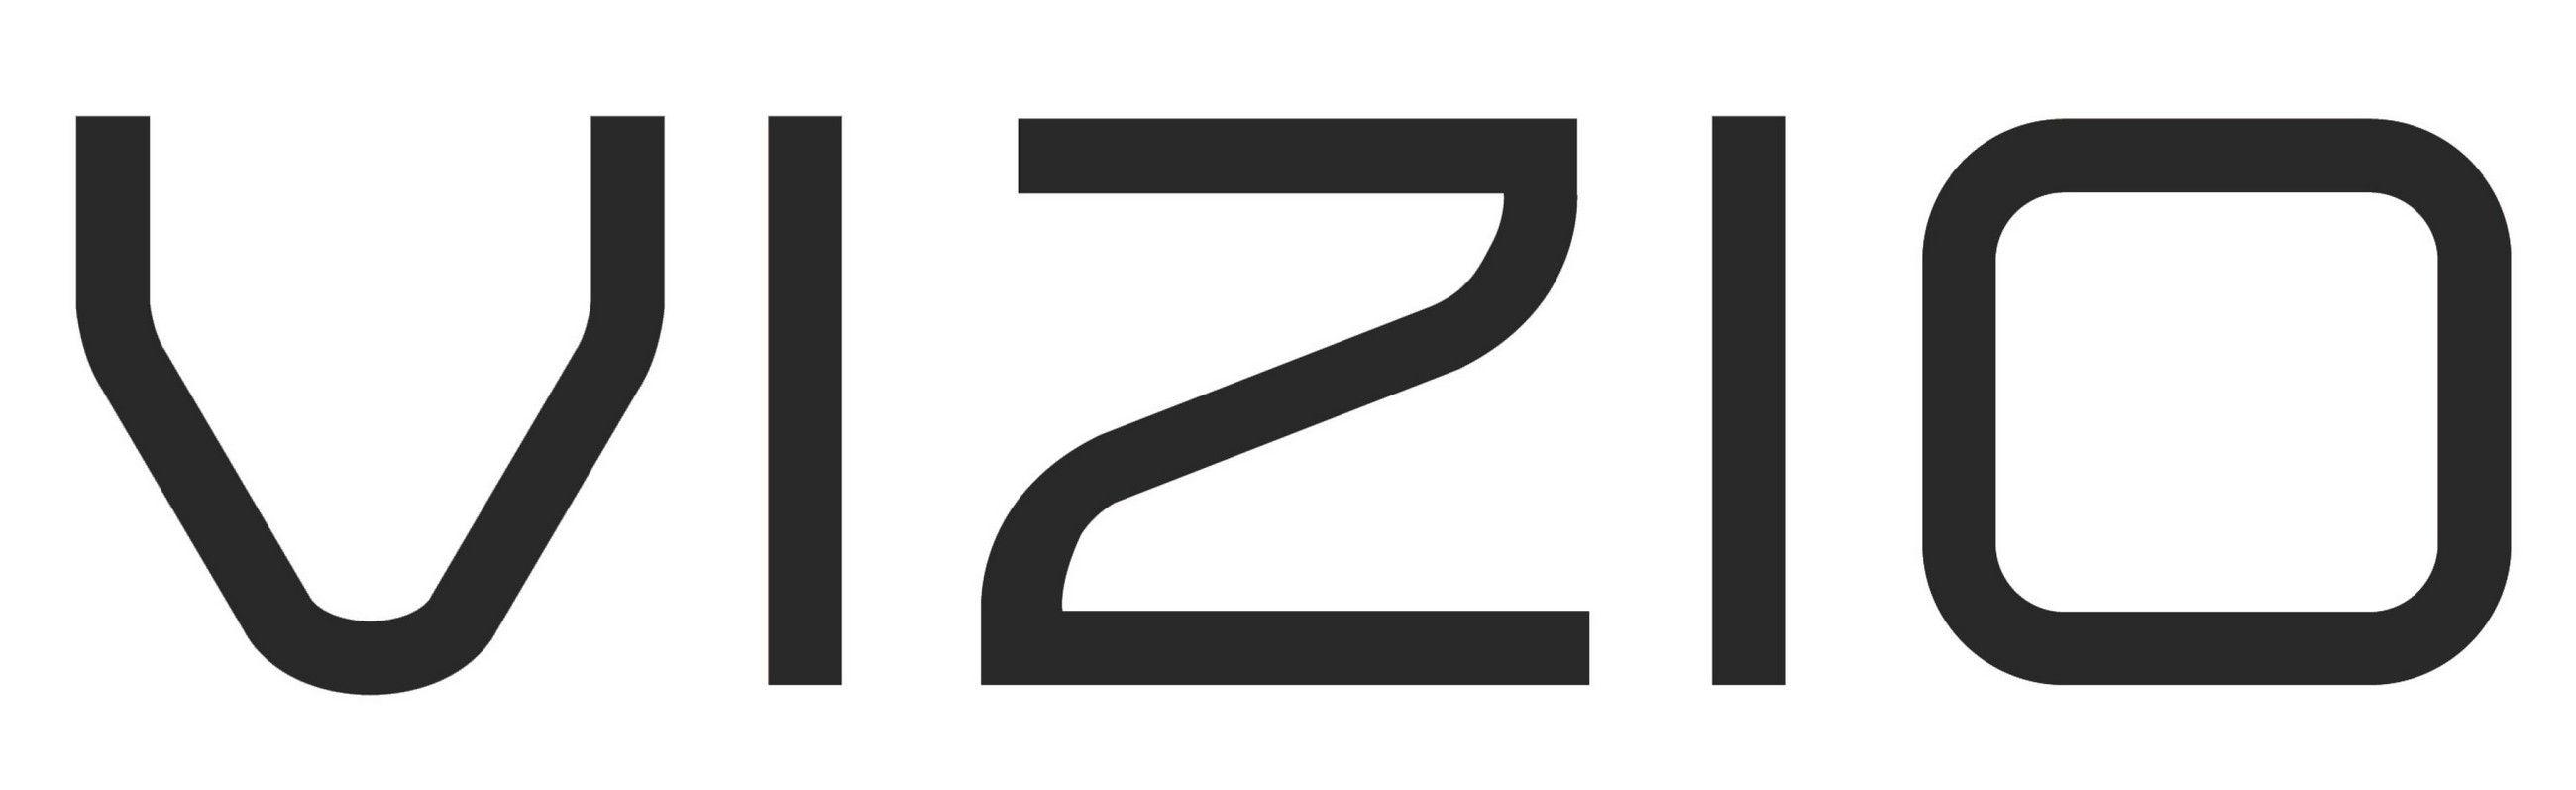 Vizio TV Logo - vizio-logo